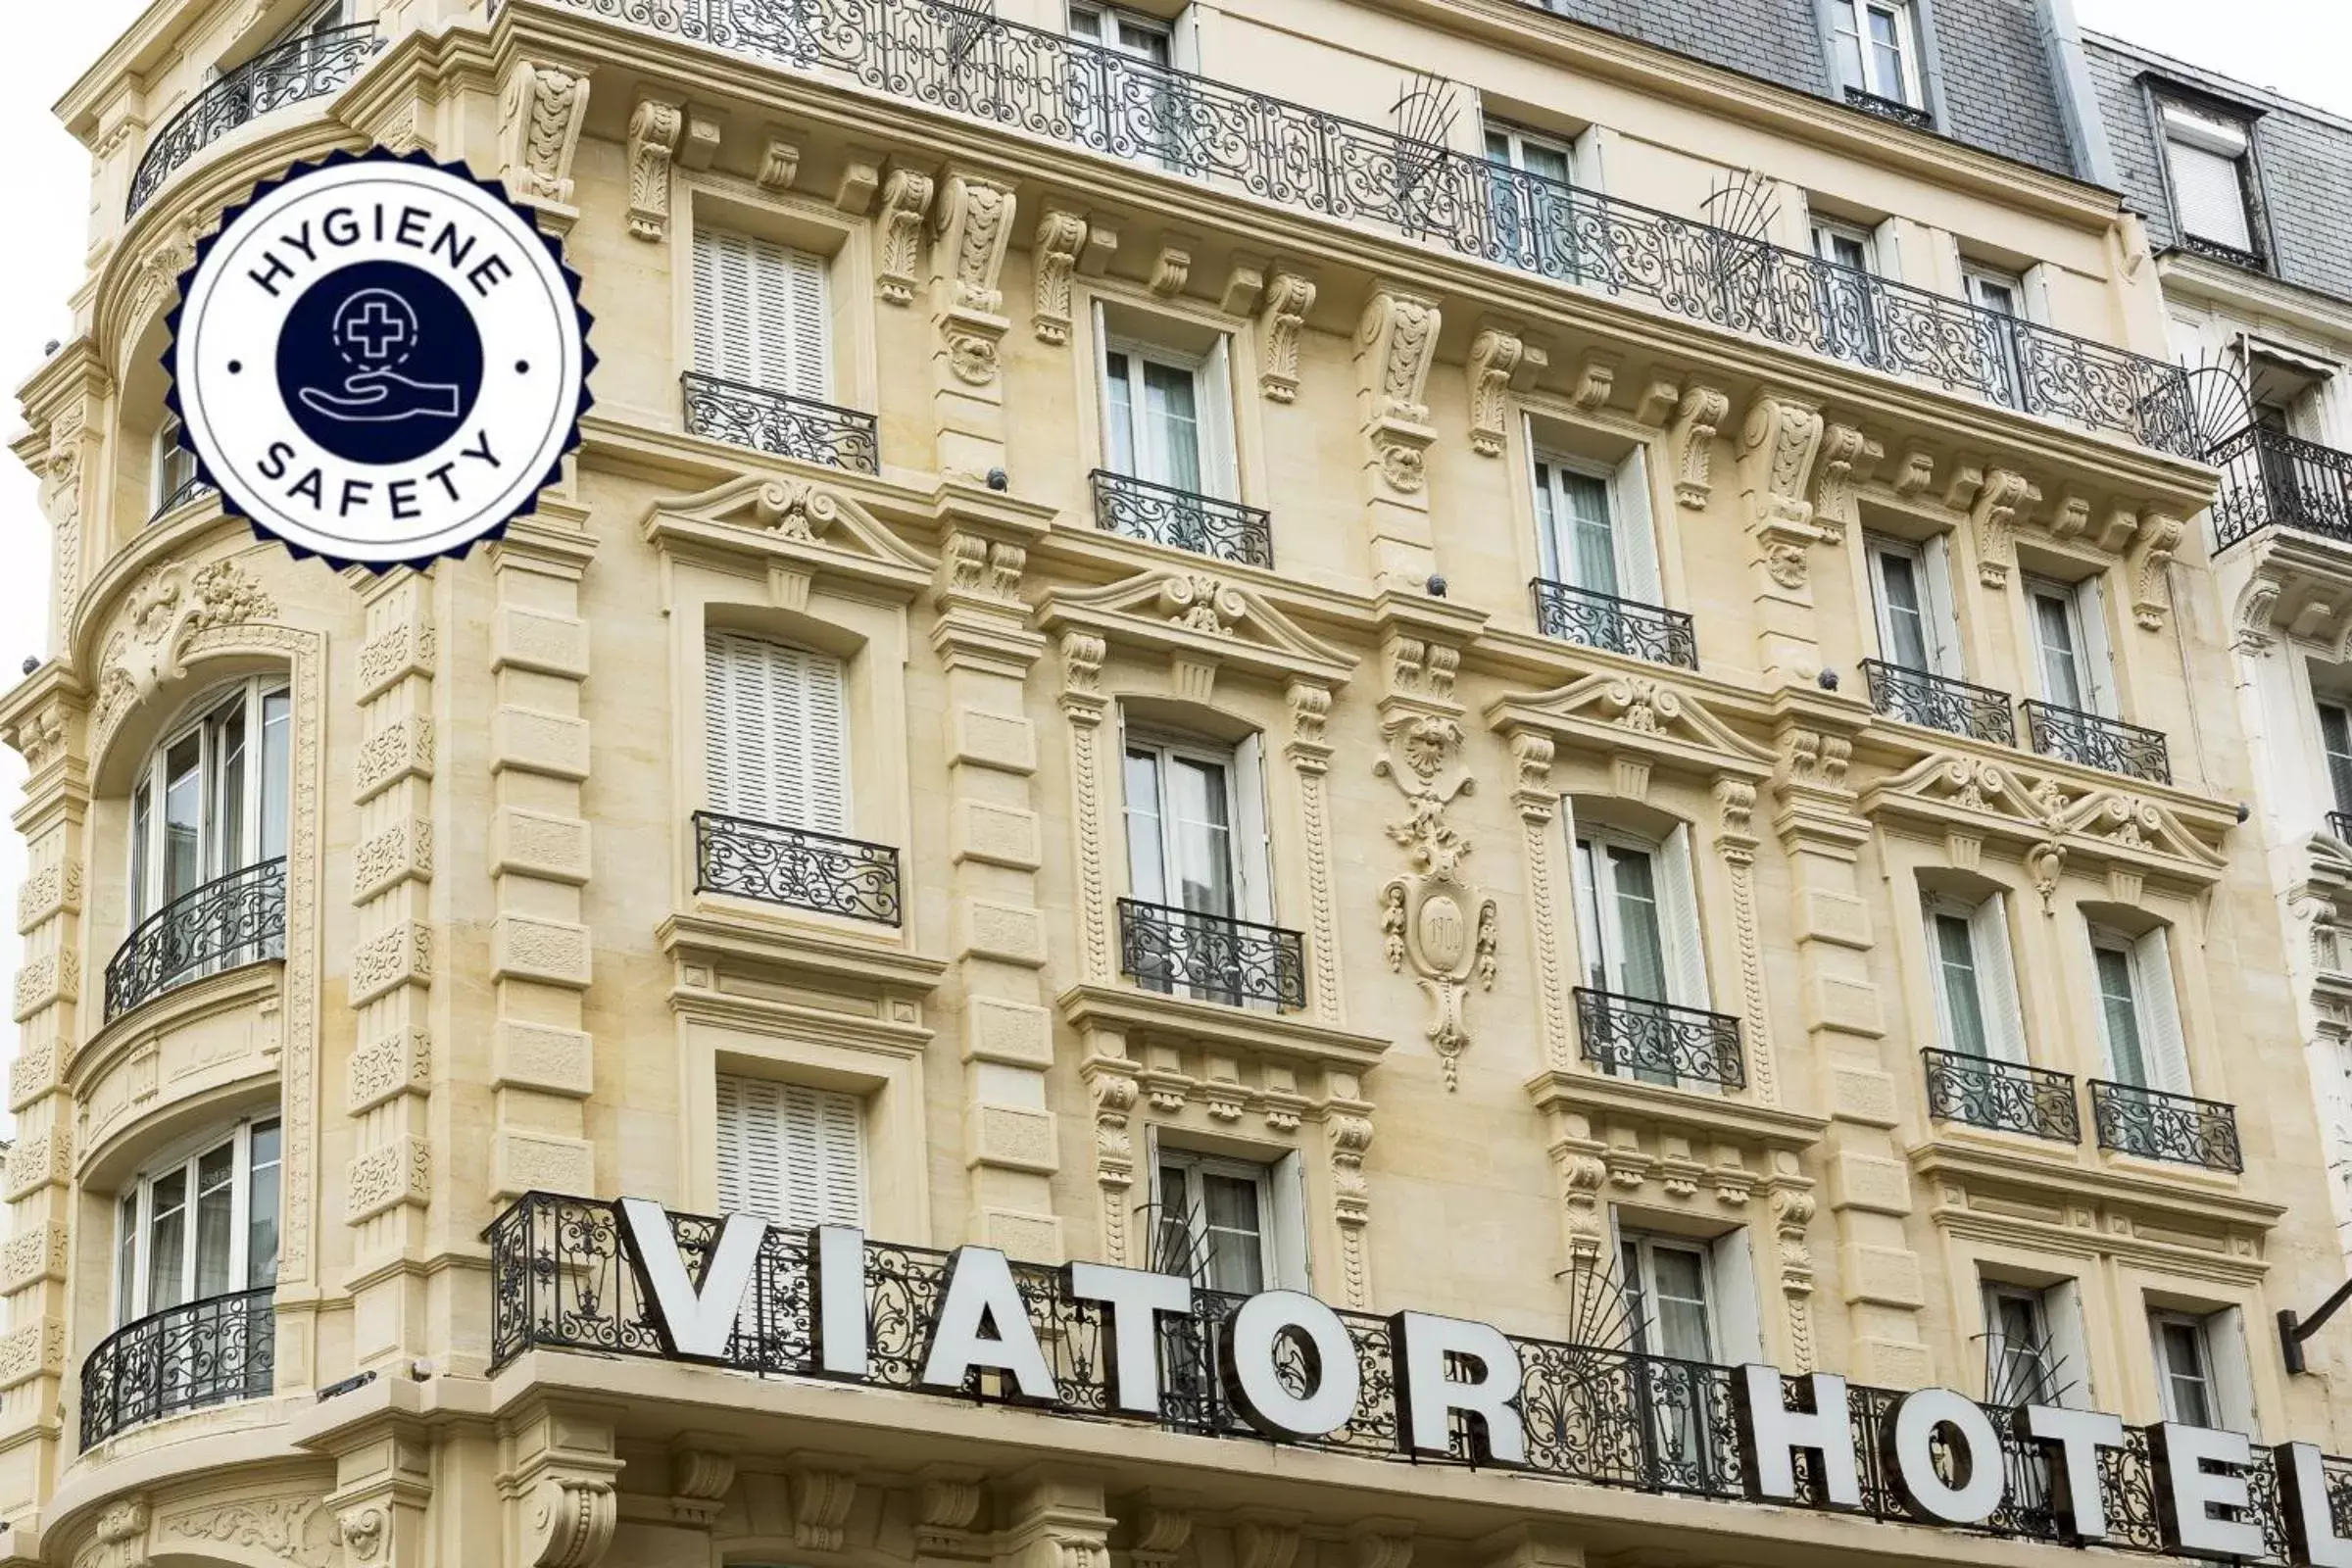 Facade/entrance, Property Building in Hotel Viator - Gare de Lyon